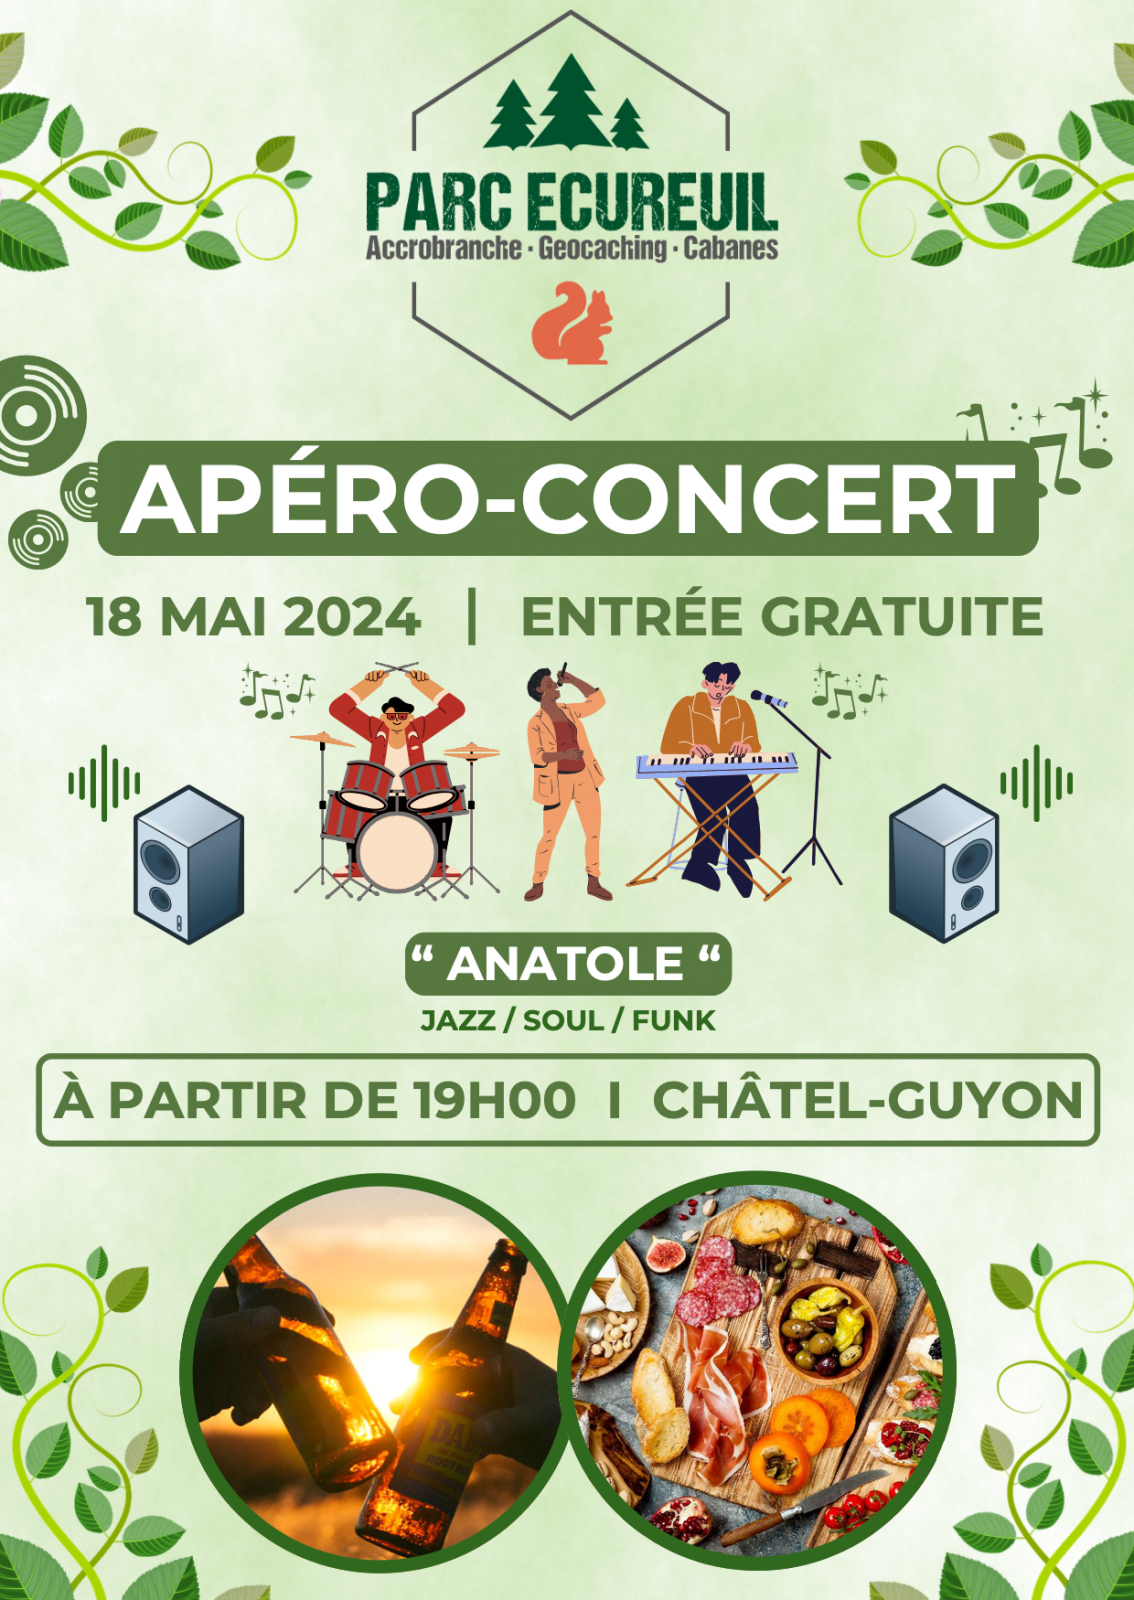 Apéro – Concert au Parc Écureuil